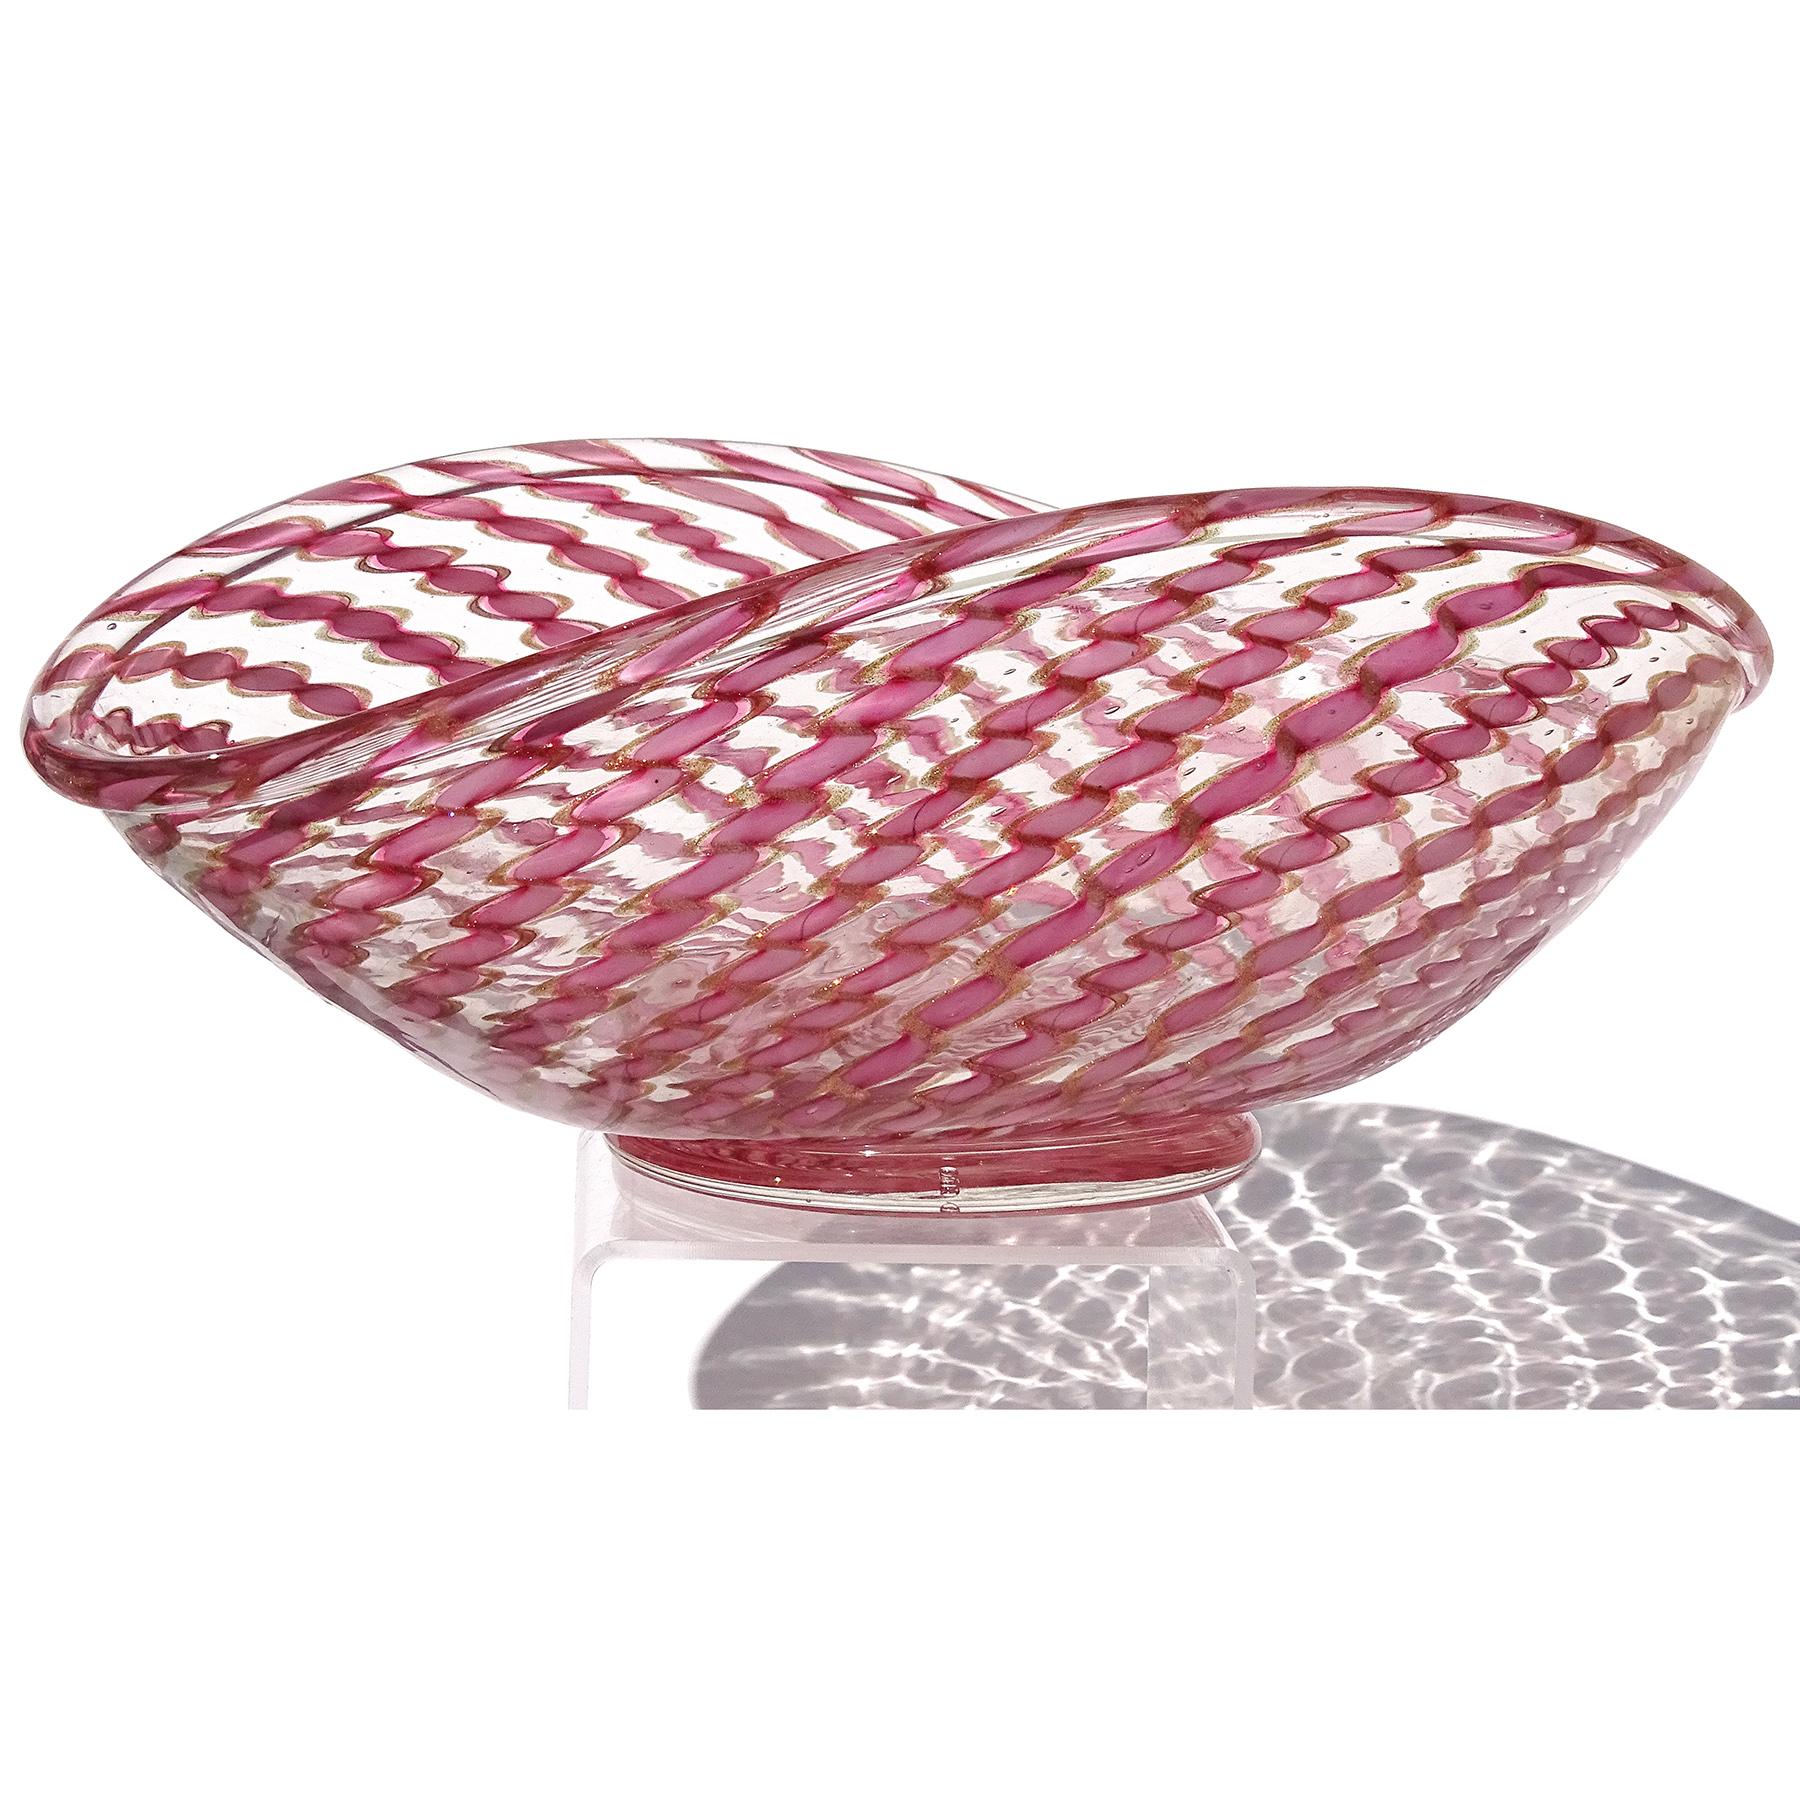 Magnifique et grande coupe de centre de table en verre soufflé à la main de Murano, rose et rubans d'aventurine. Documenté à la société Fratelli Toso. Le bol est fait de rubans tordus de mouchetures d'aventurine rose et cuivre. Il a une forme ovale,